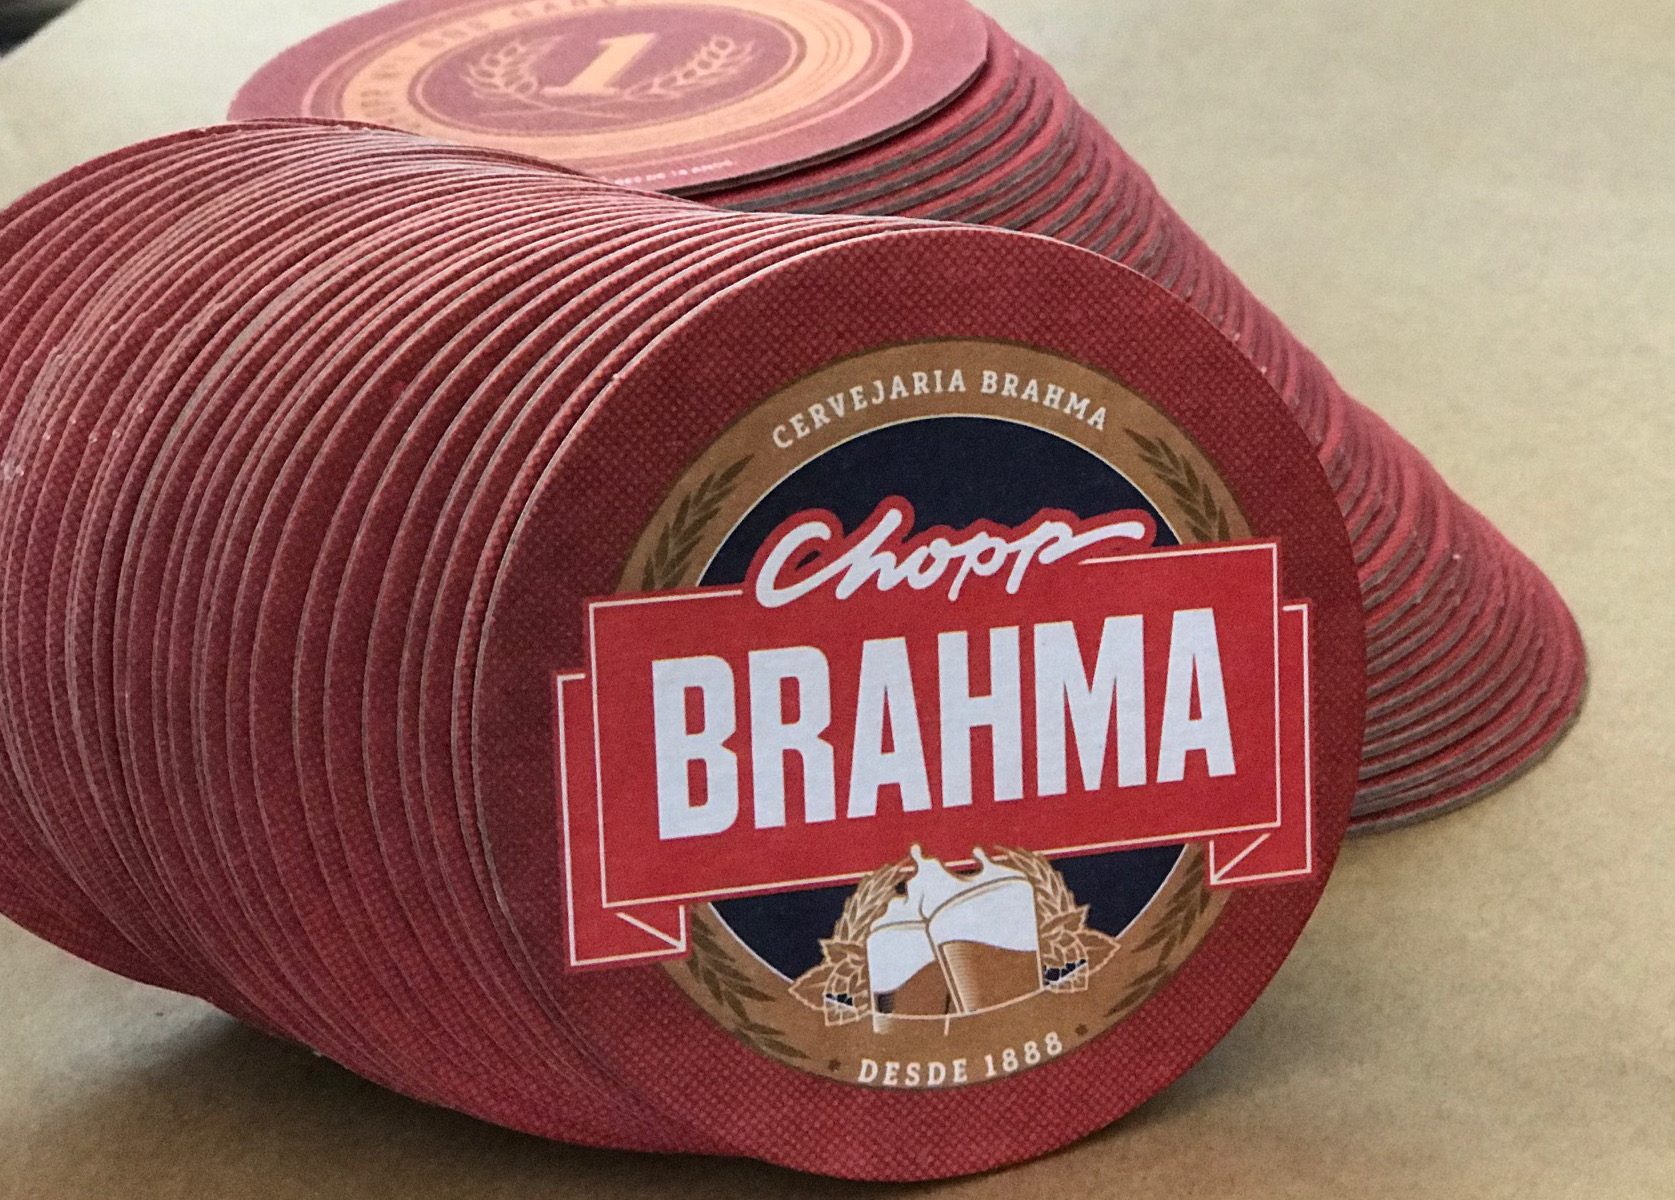 Bolacha de Chopp Brahma 2018